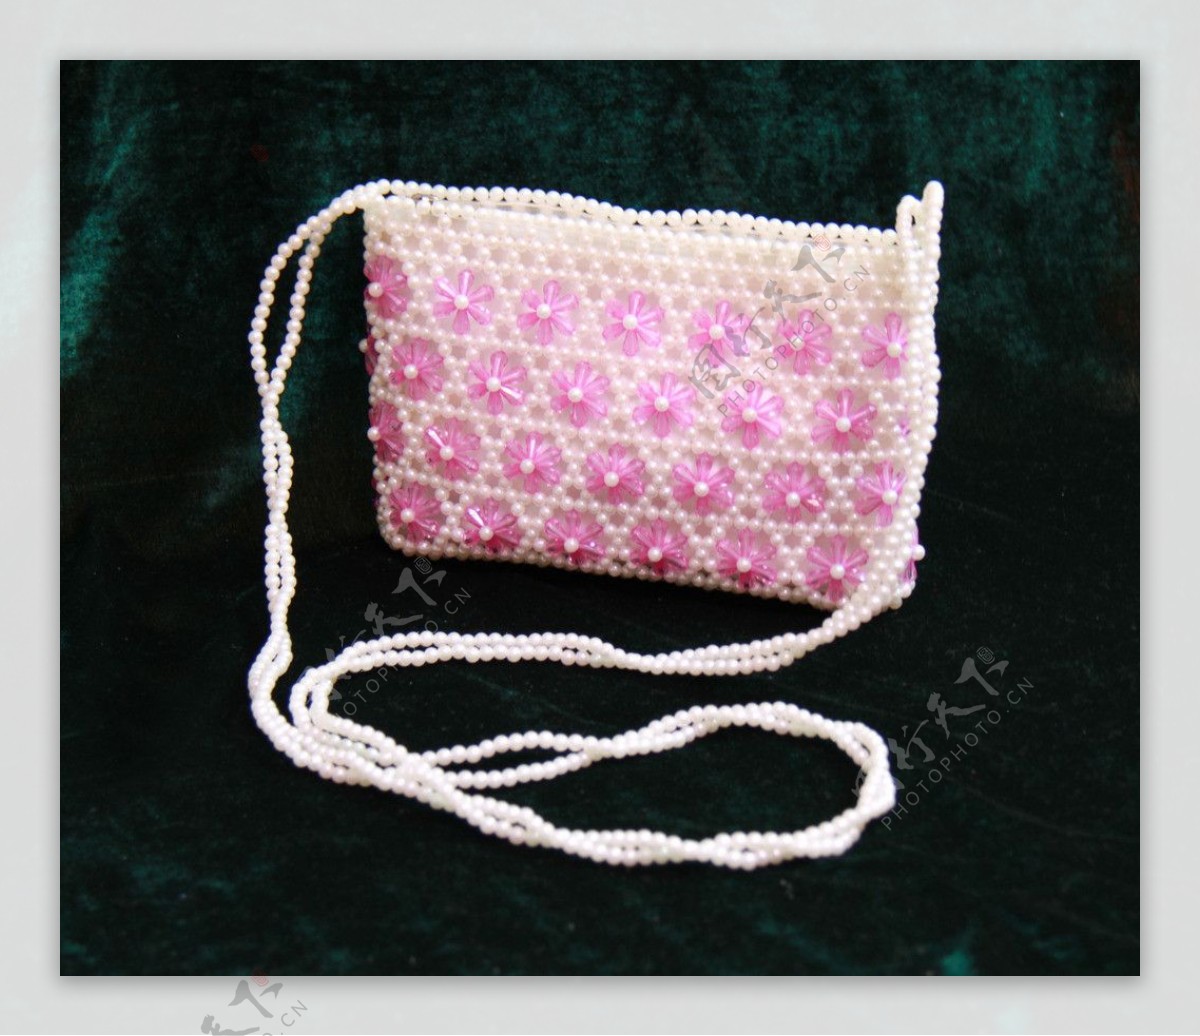 粉色水晶串珠包图片